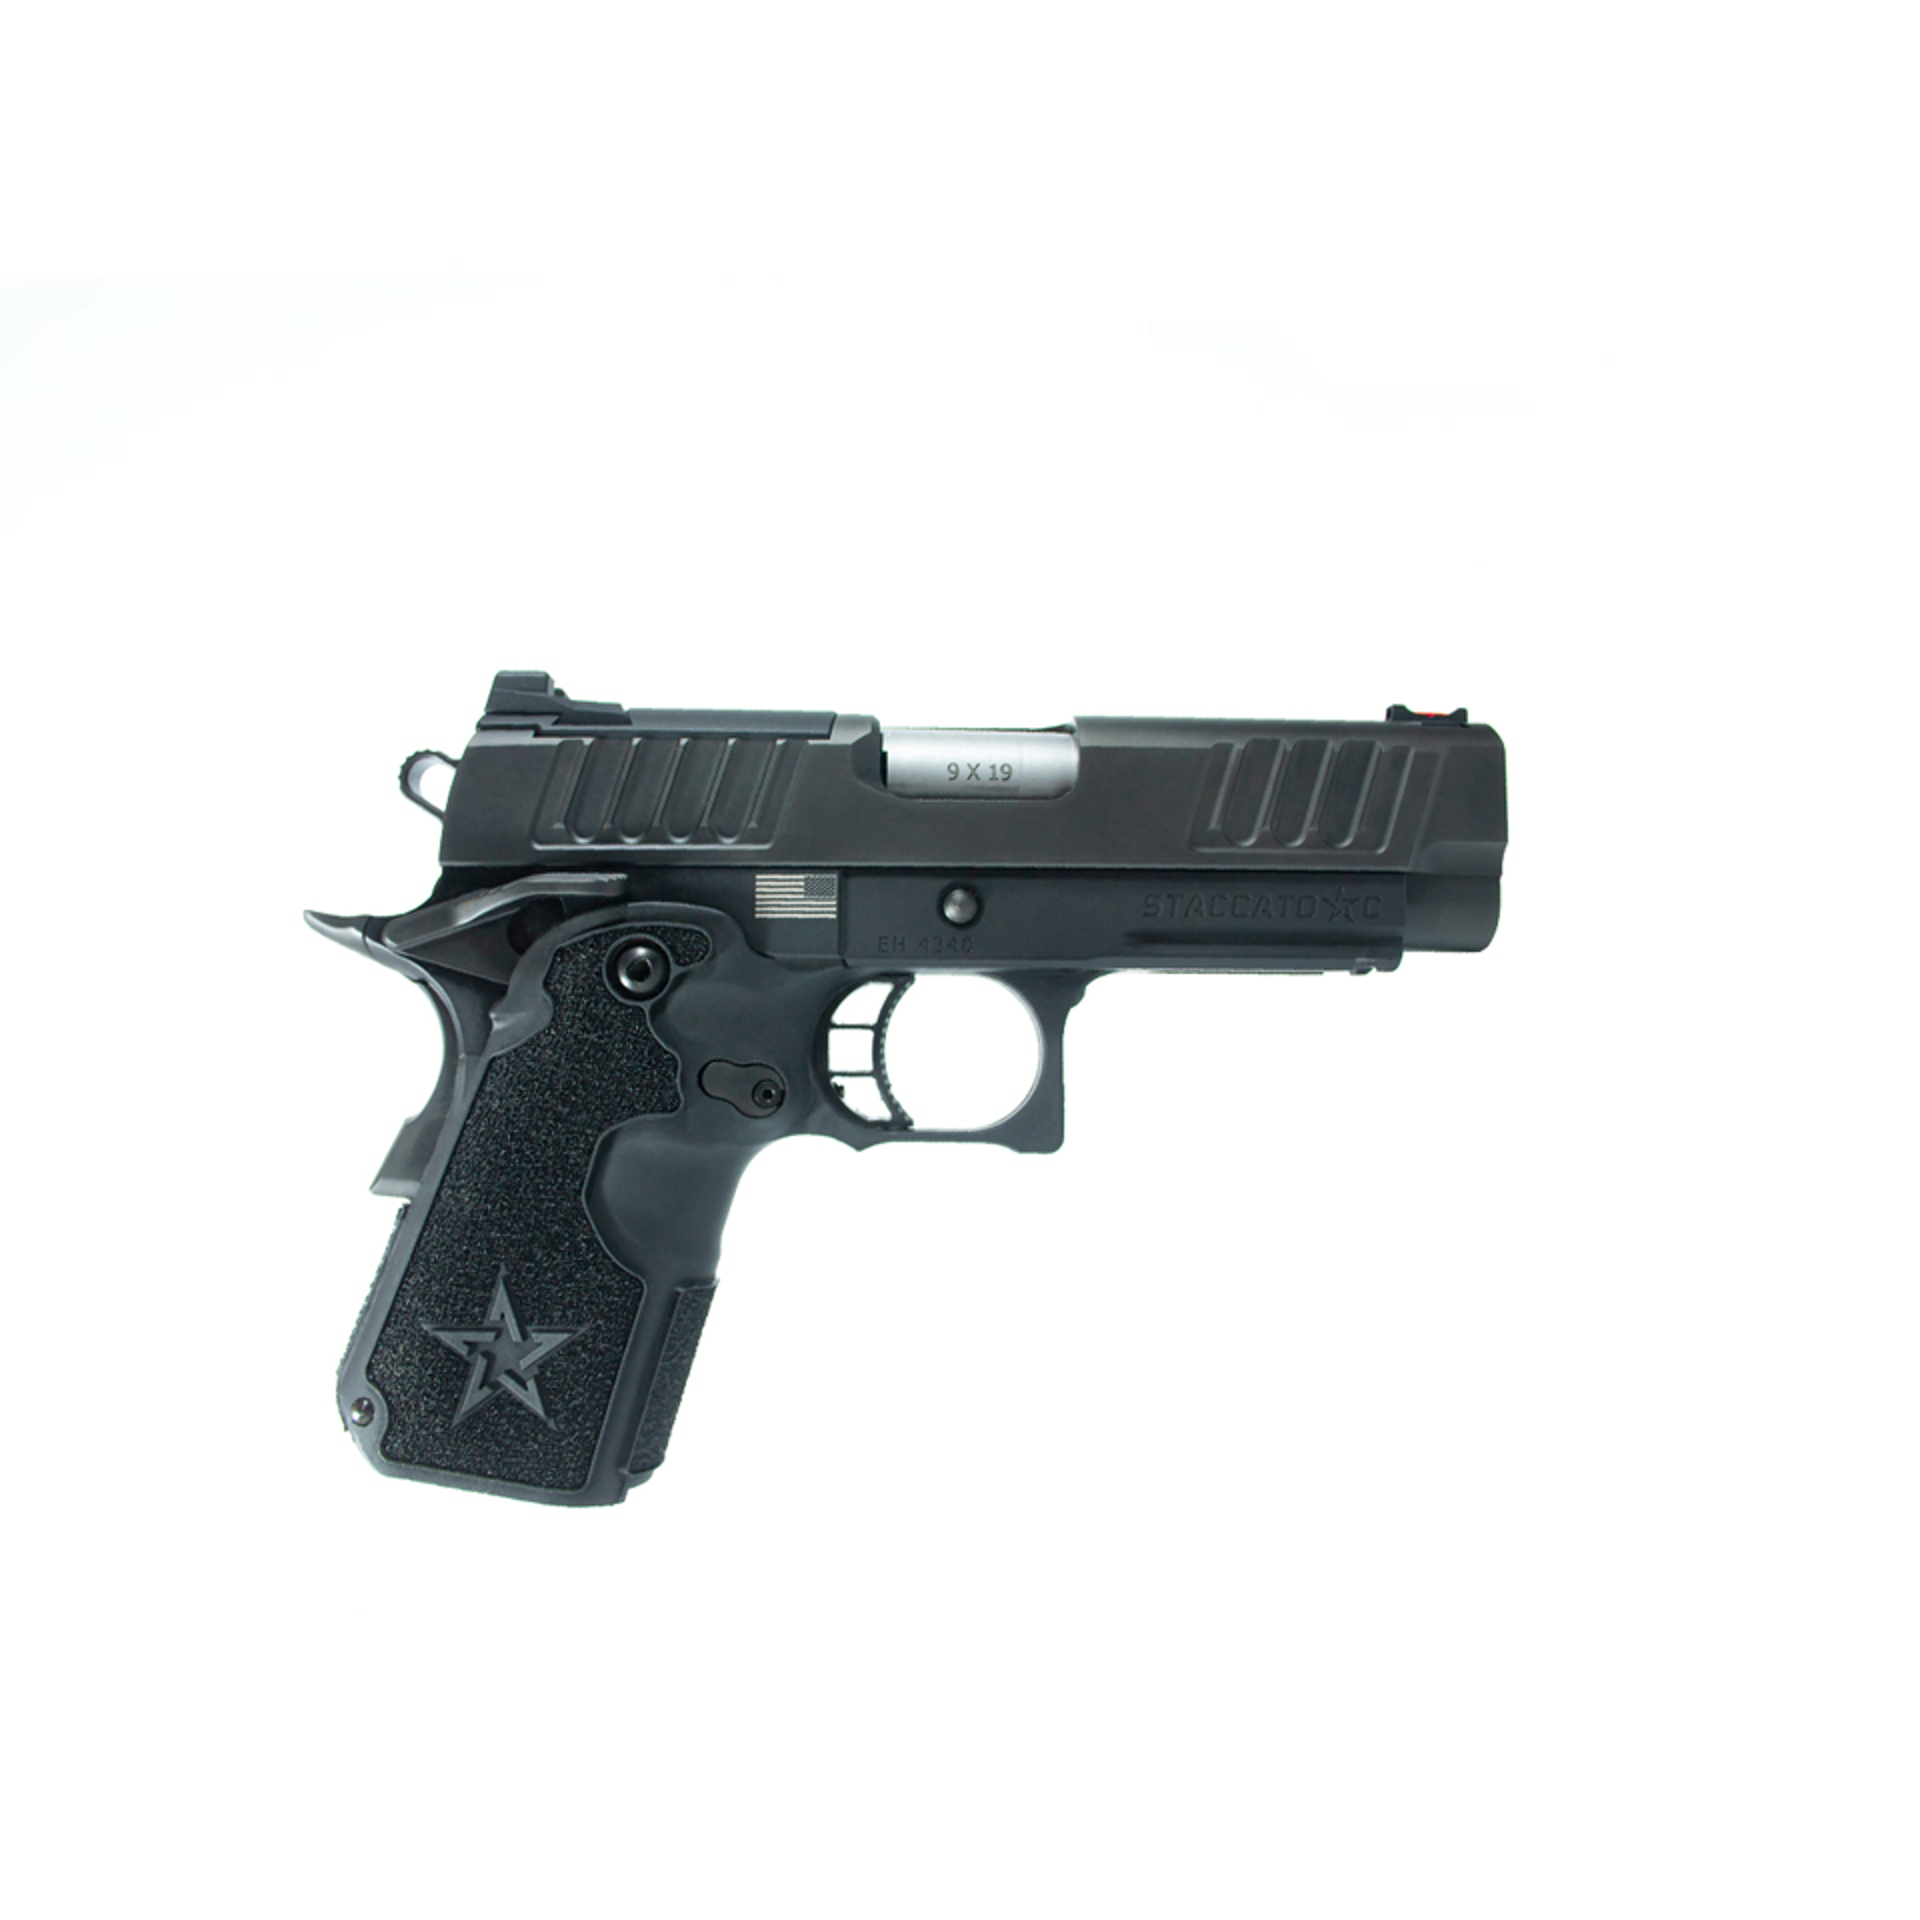 pistol facing right